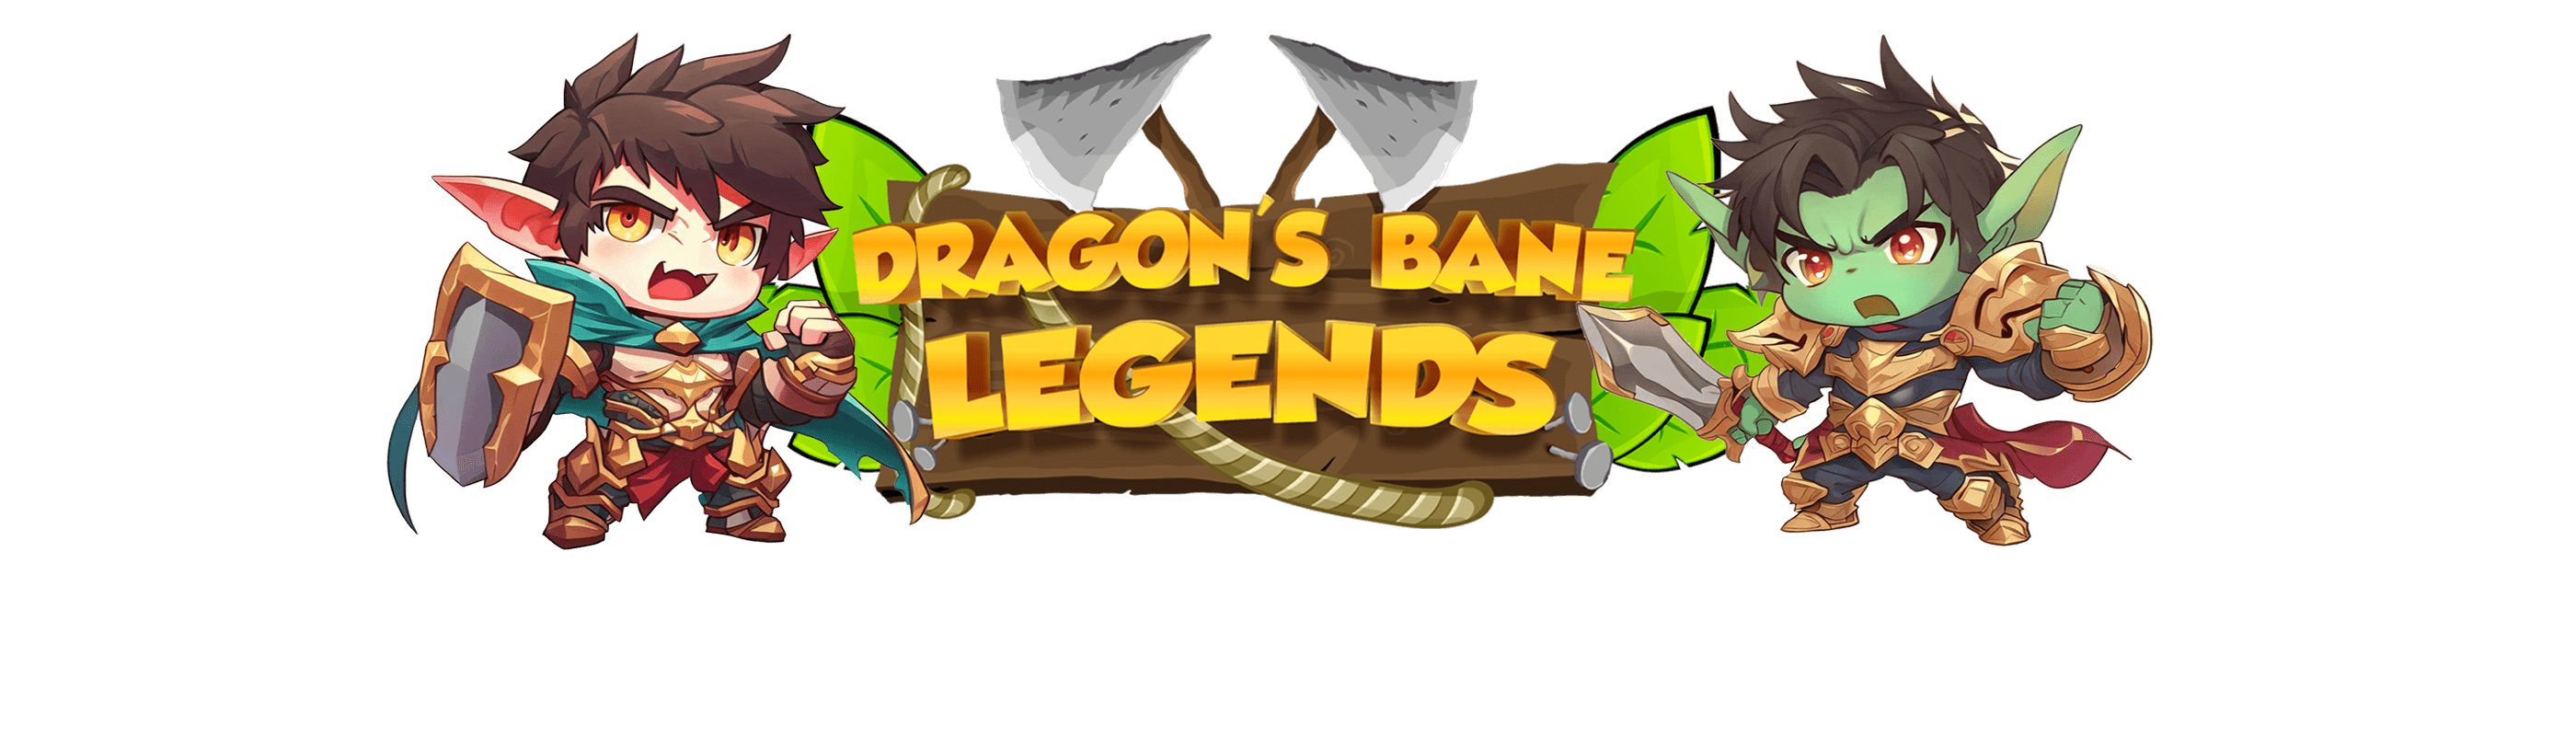 DragonsBaneLegends banner